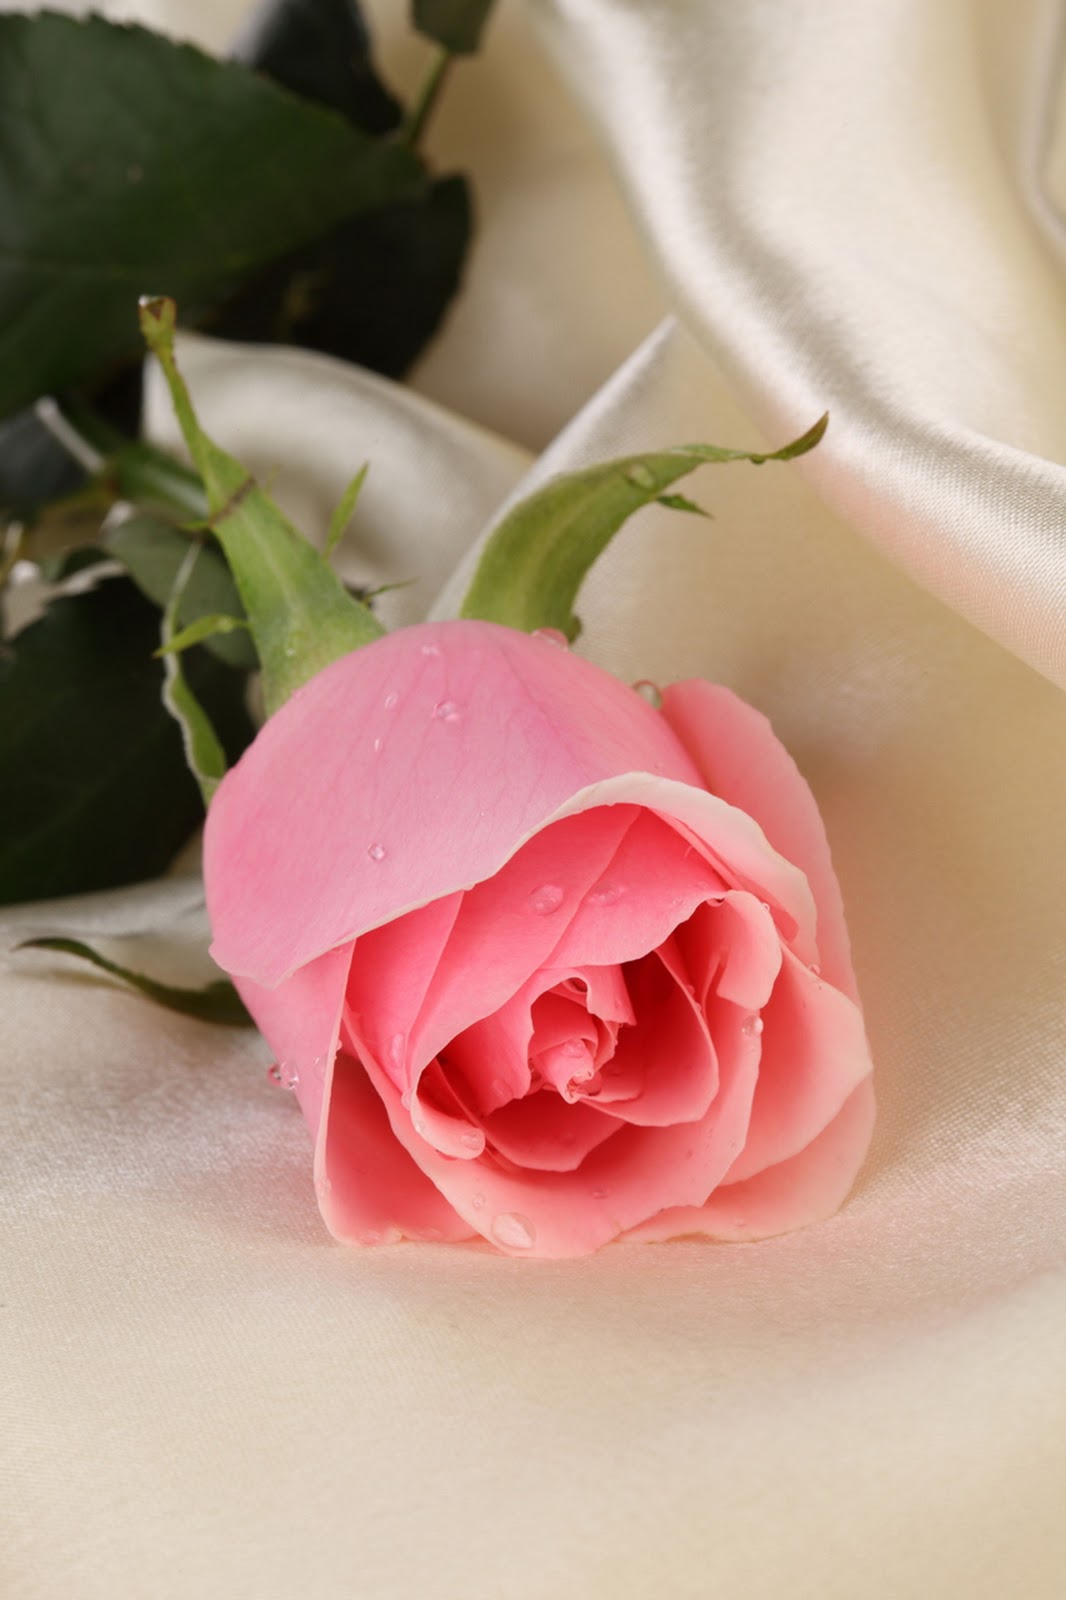  Gambar  Bunga  Mawar  yang Cantik Cantik